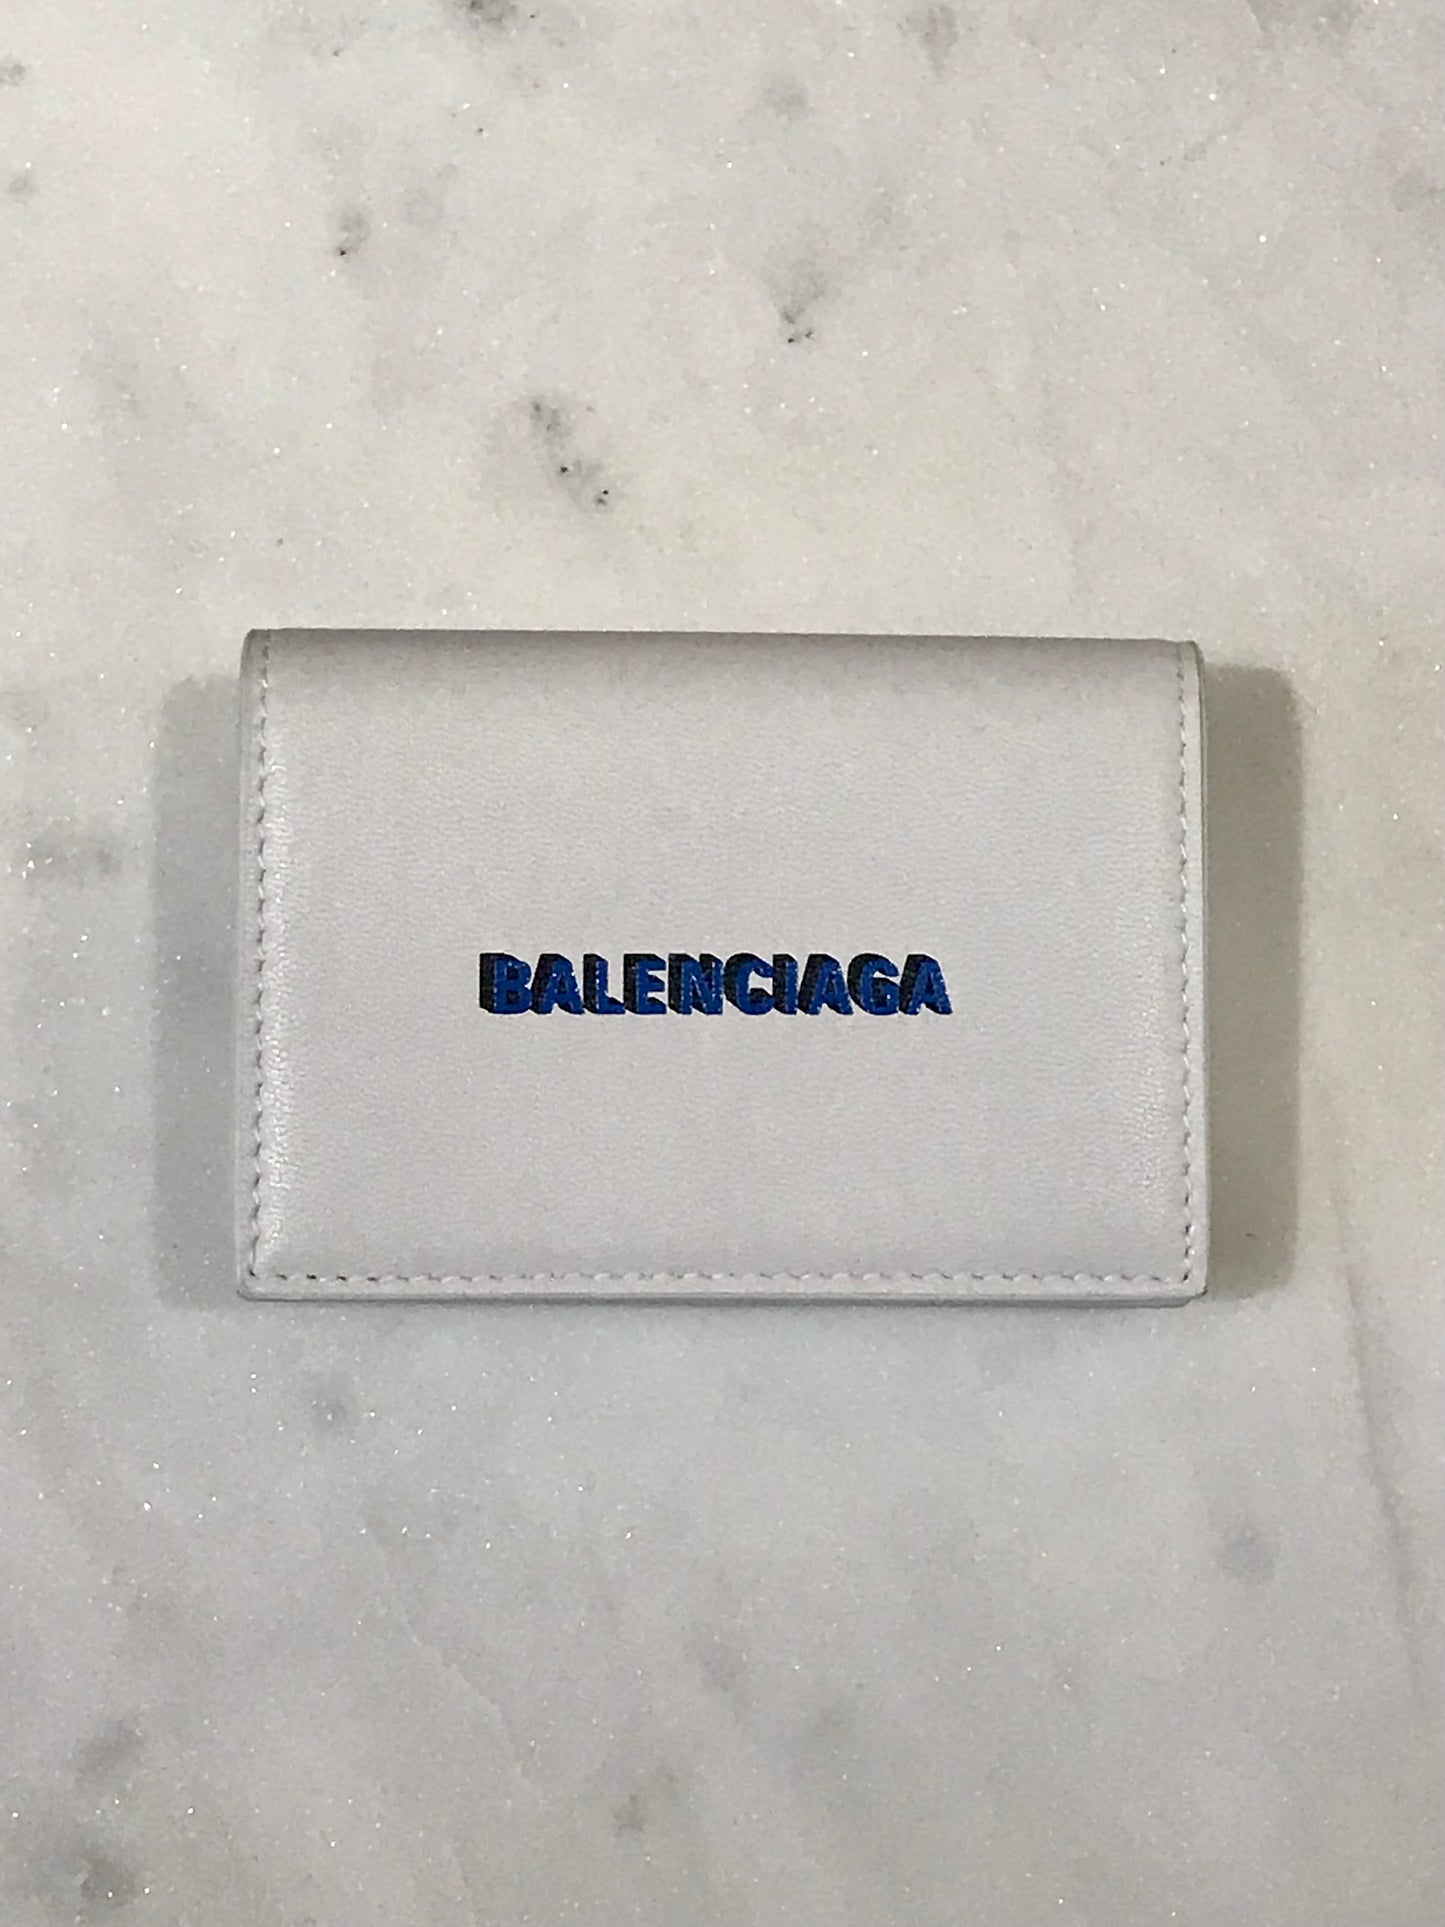 Porte-monnaie Balenciaga blanc Neuf